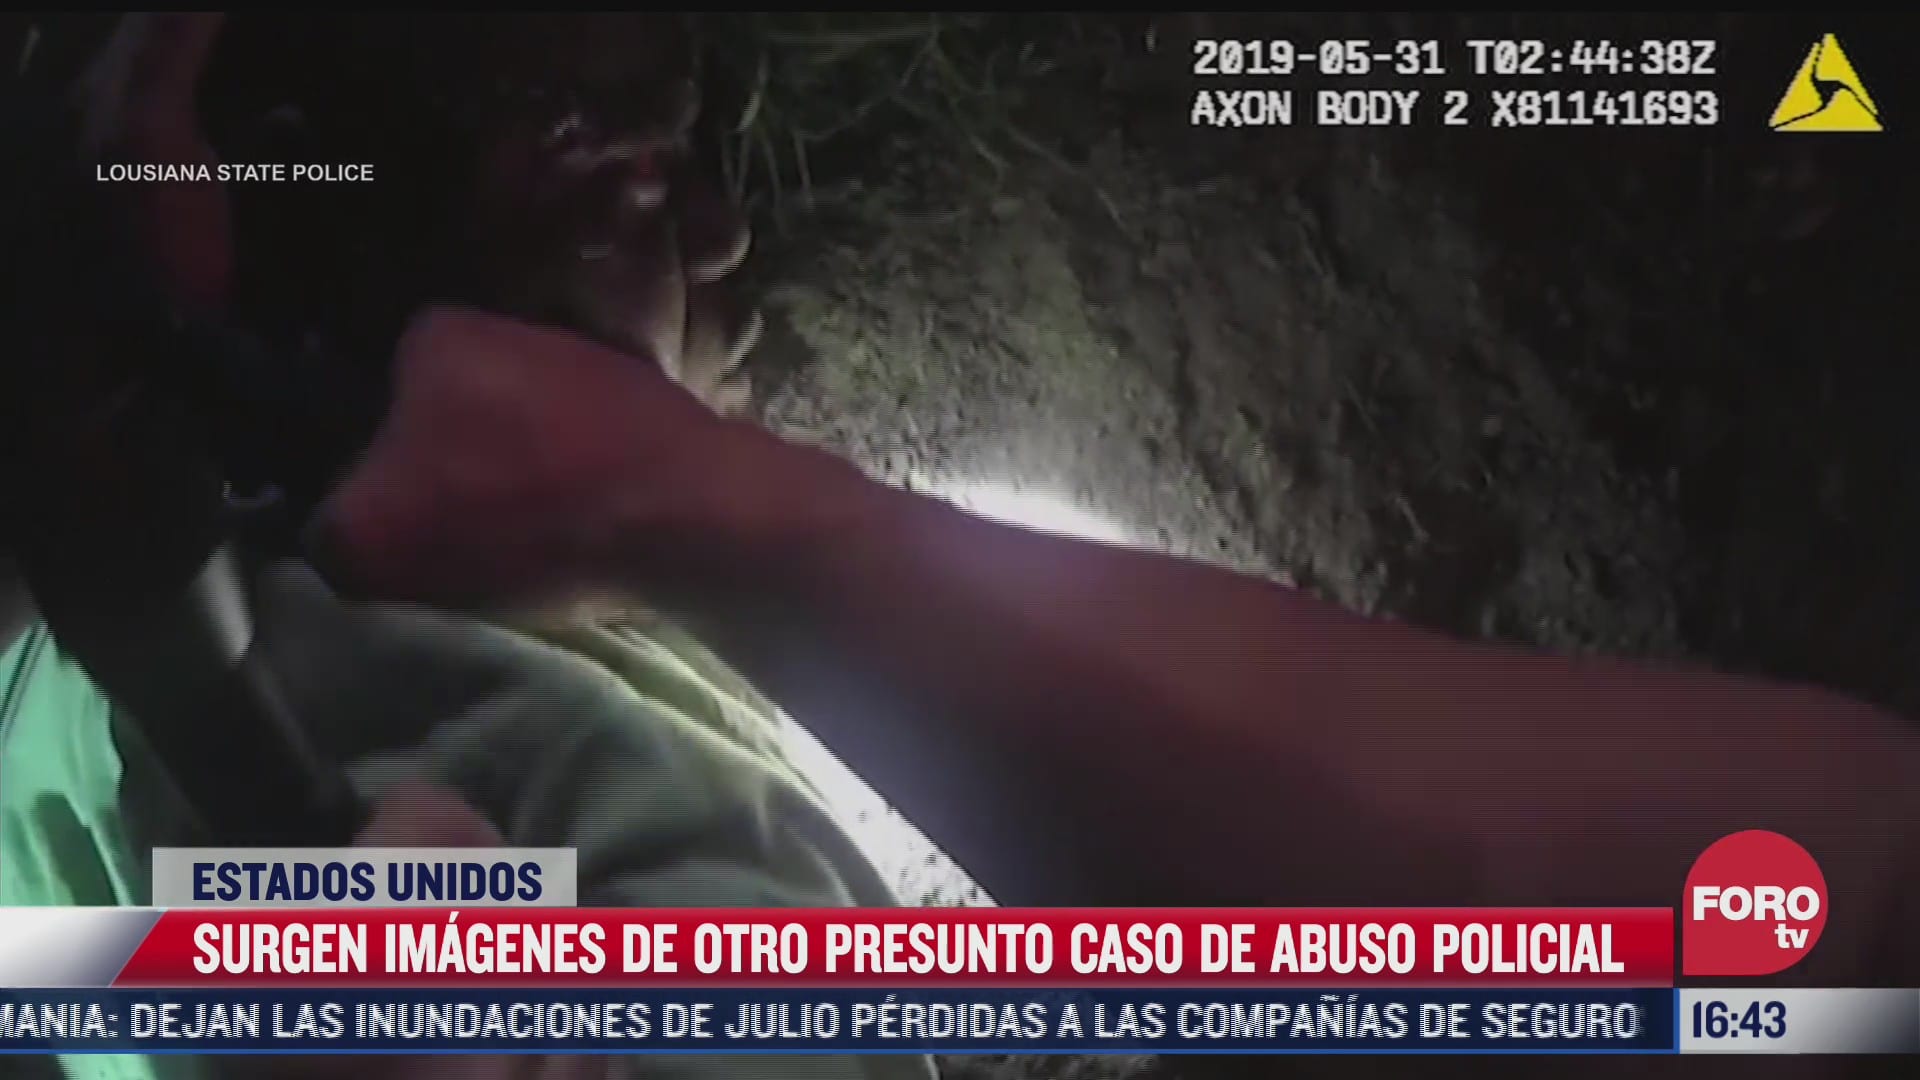 video captan imagenes de nuevo presunto abuso policial en eeuu